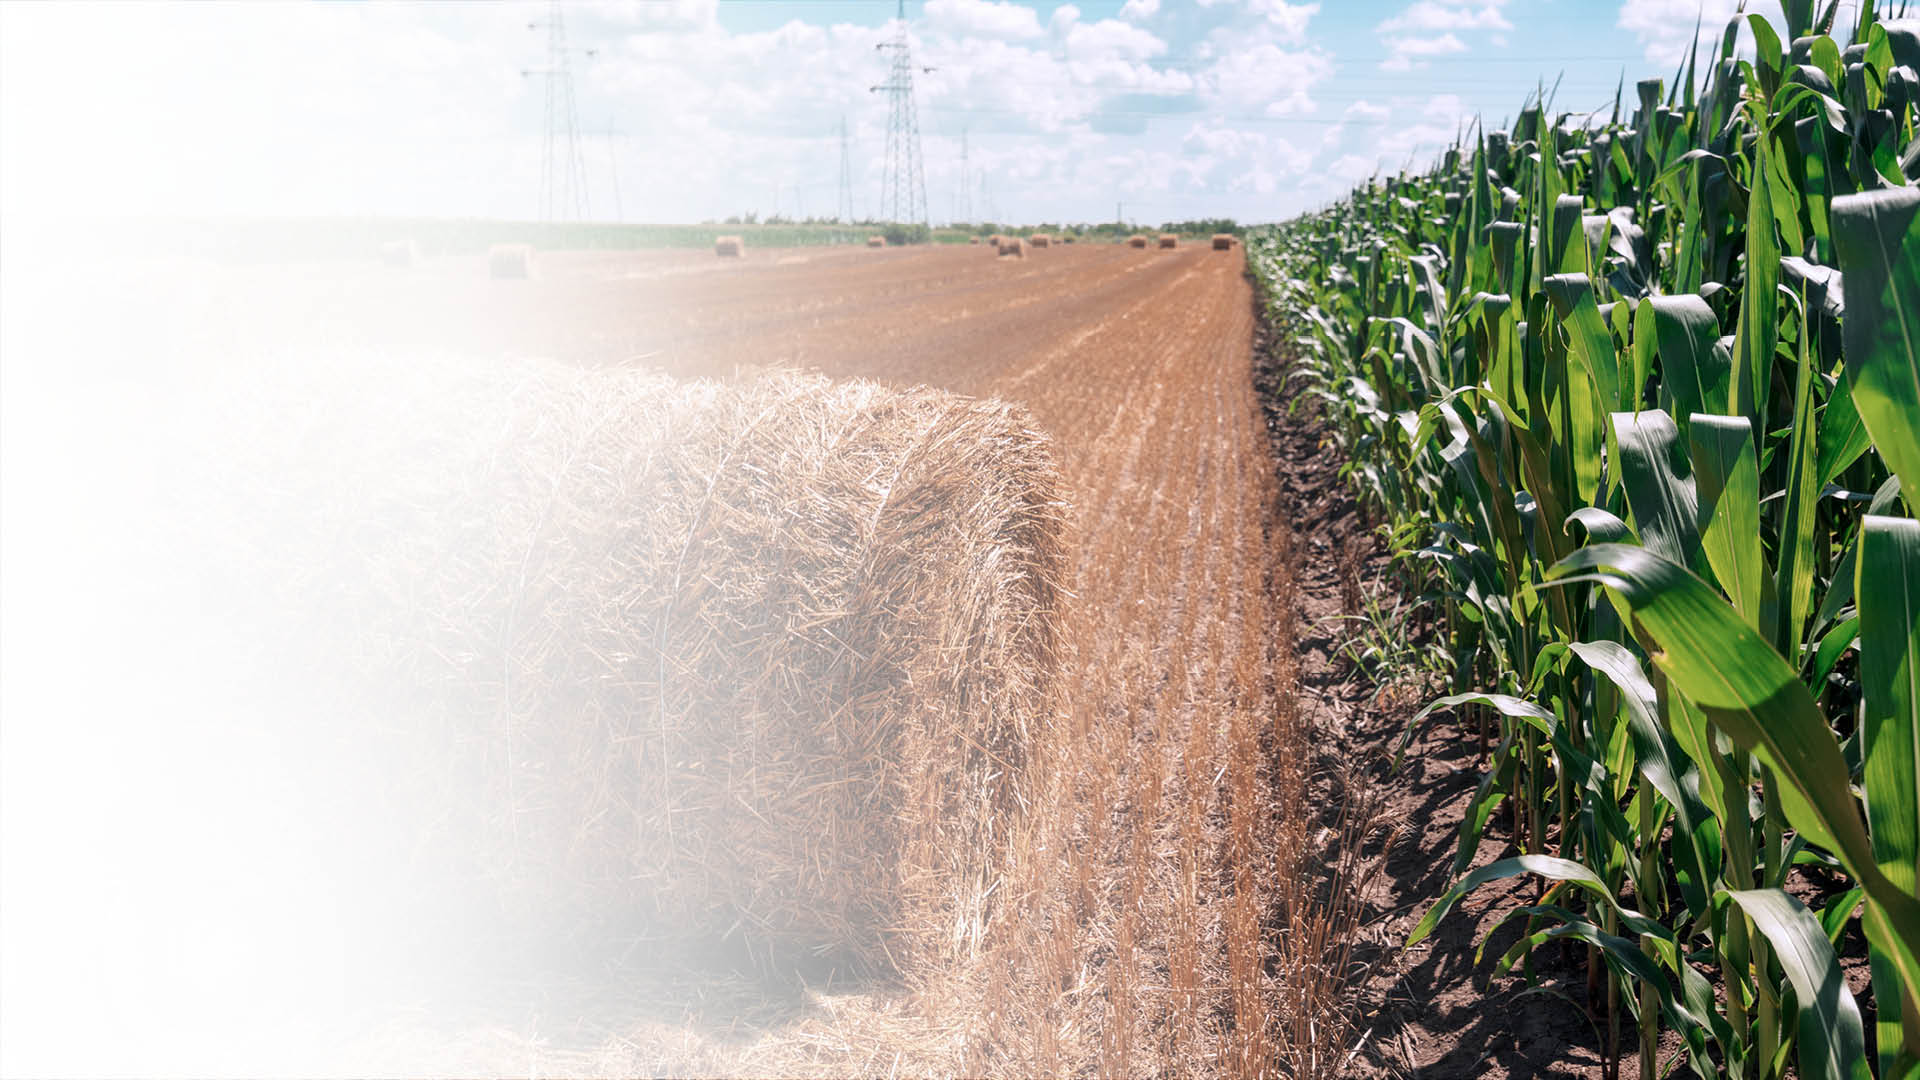 以干草捆和玉米田的图片代表农业应用领域